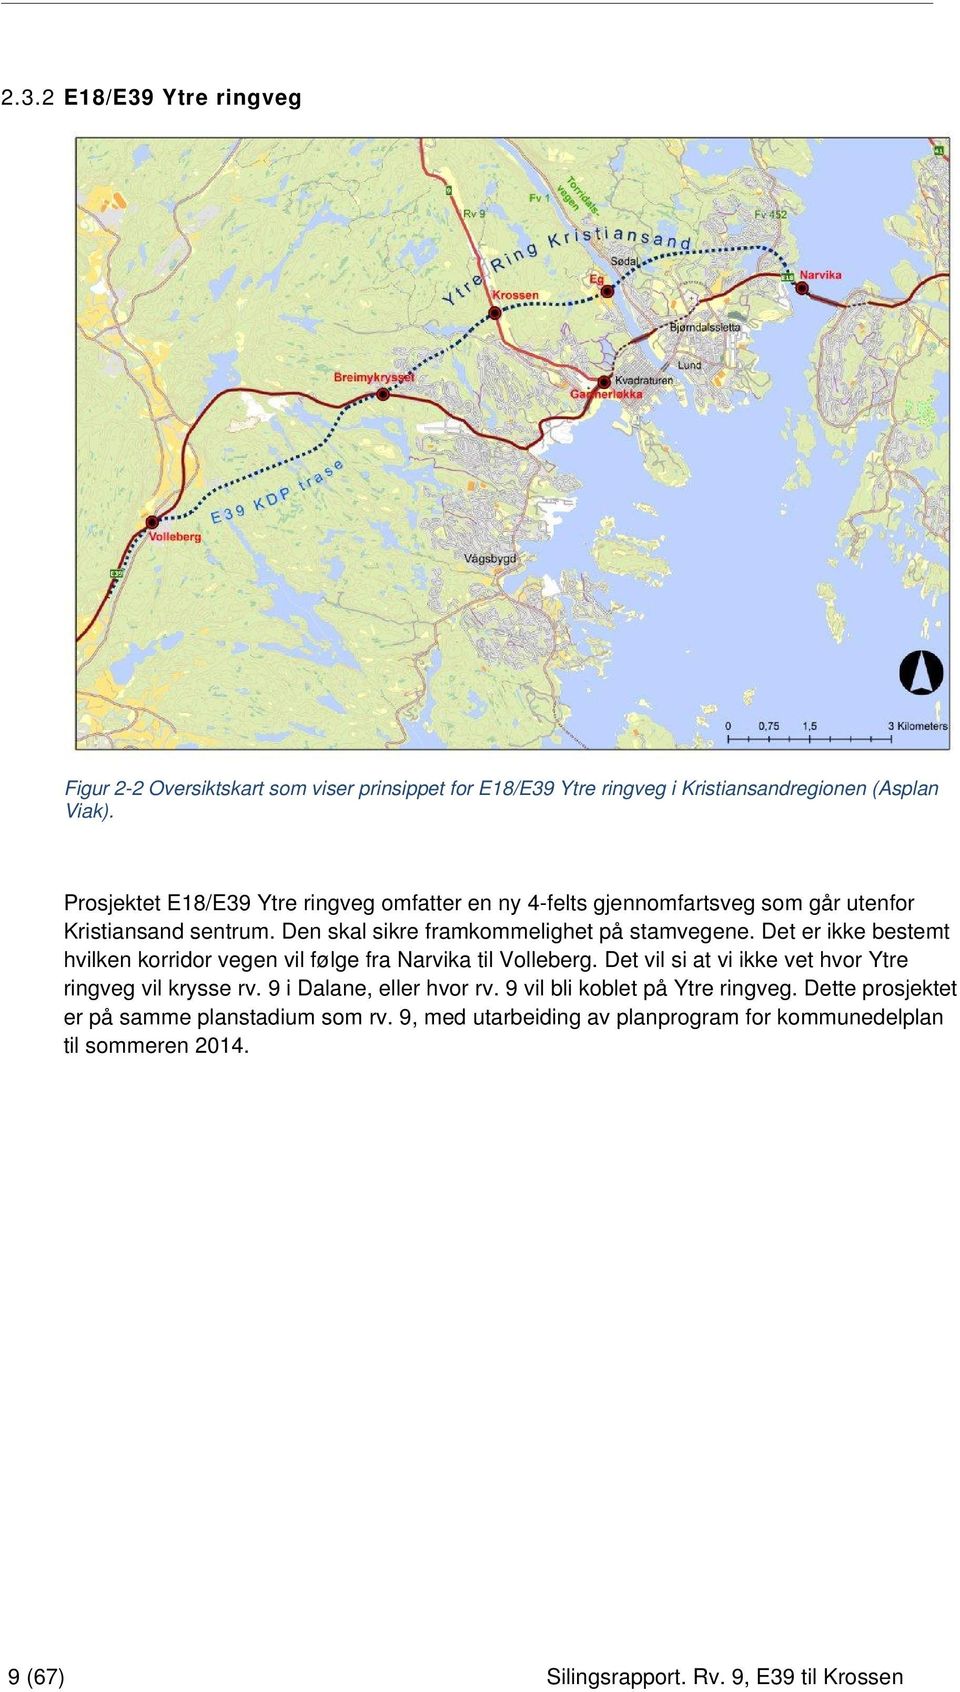 Det er ikke bestemt hvilken korridor vegen vil følge fra Narvika til Volleberg. Det vil si at vi ikke vet hvor Ytre ringveg vil krysse rv.